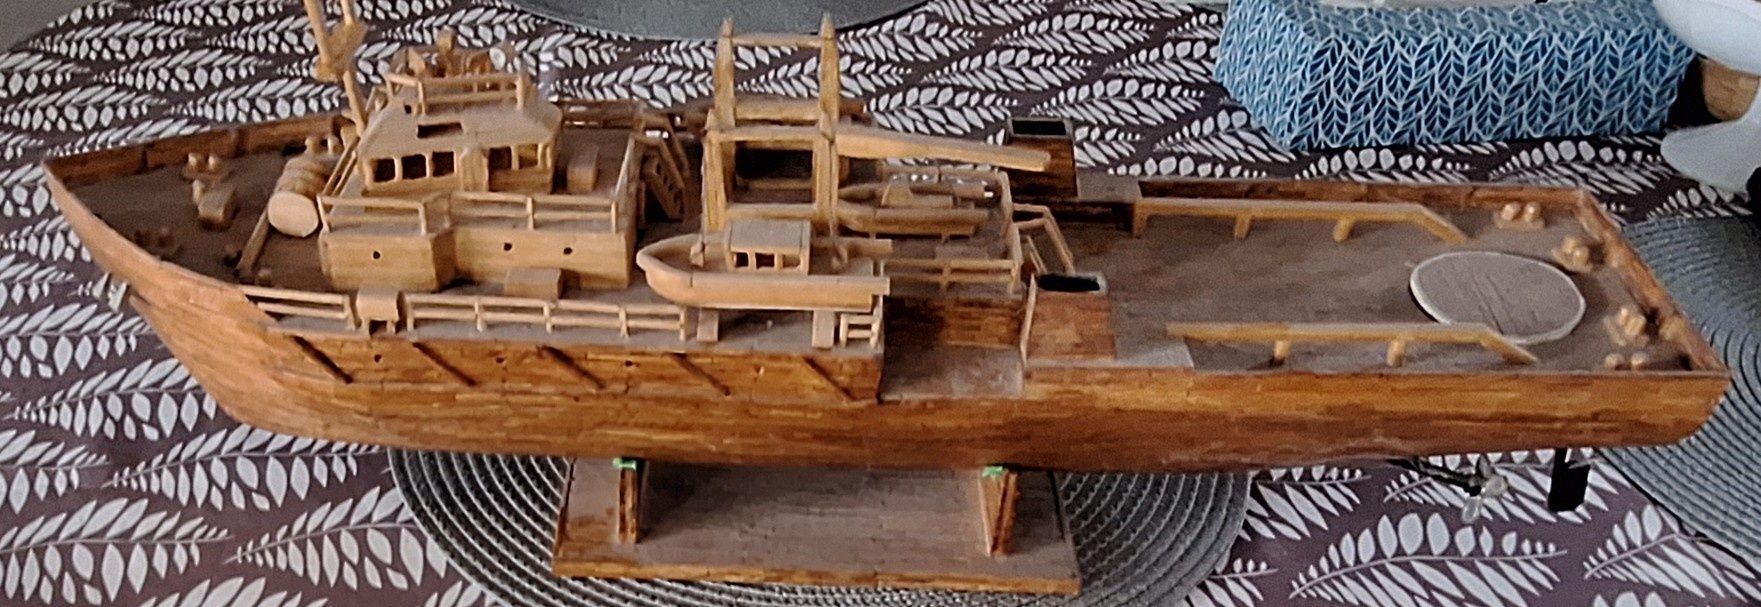 Model okrętu własnoręcznie budowany